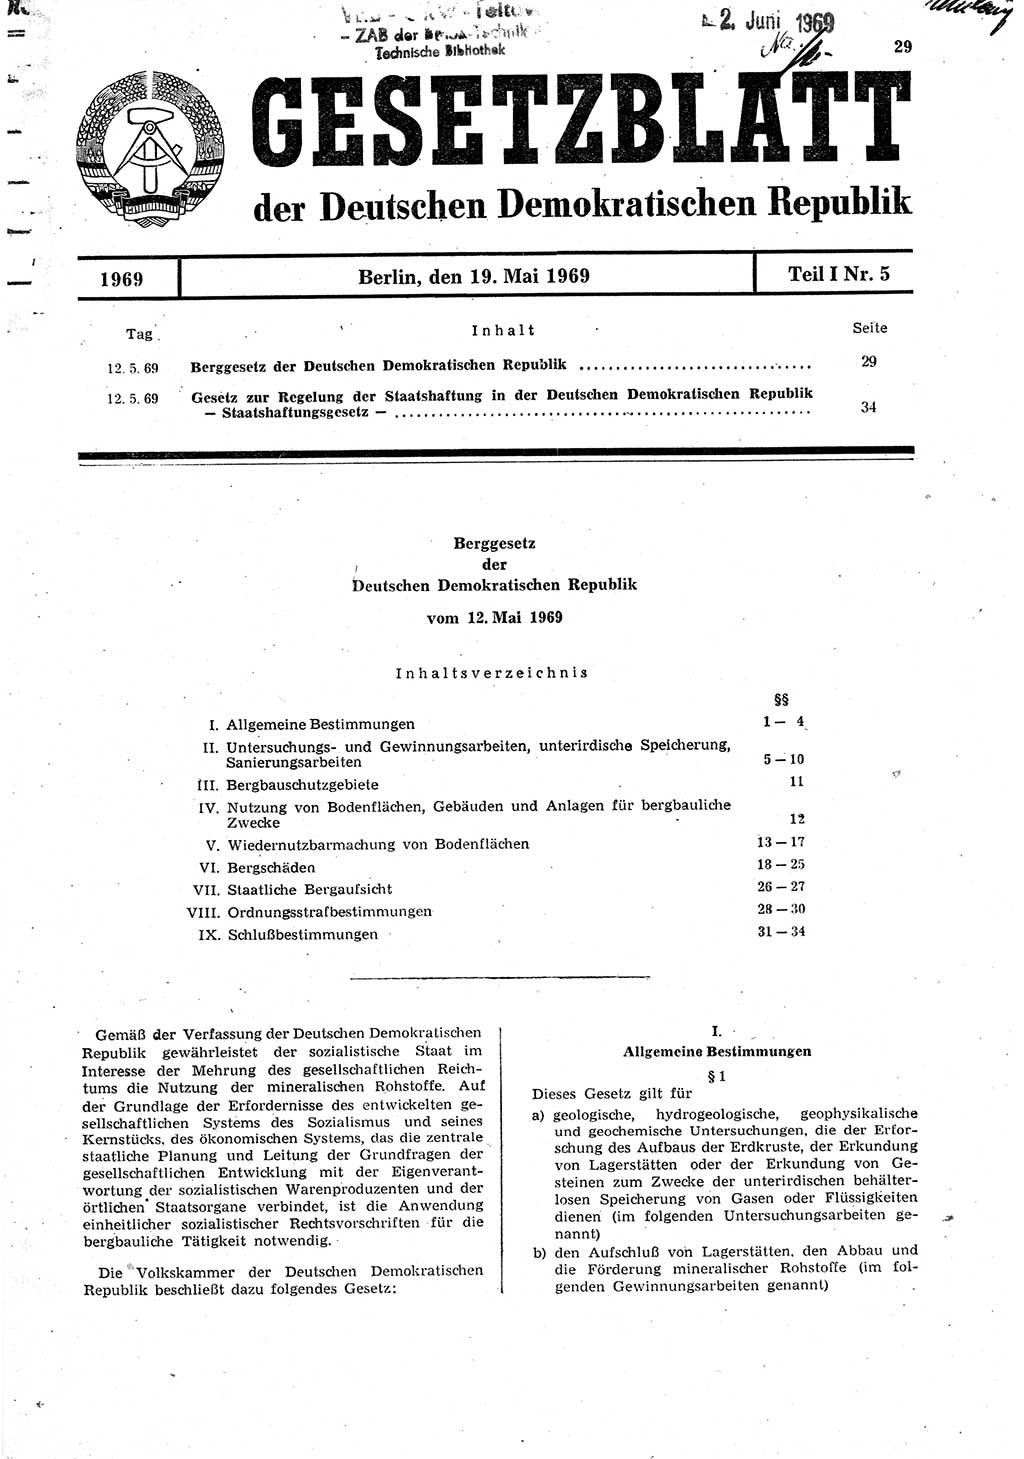 Gesetzblatt (GBl.) der Deutschen Demokratischen Republik (DDR) Teil Ⅰ 1969, Seite 29 (GBl. DDR Ⅰ 1969, S. 29)